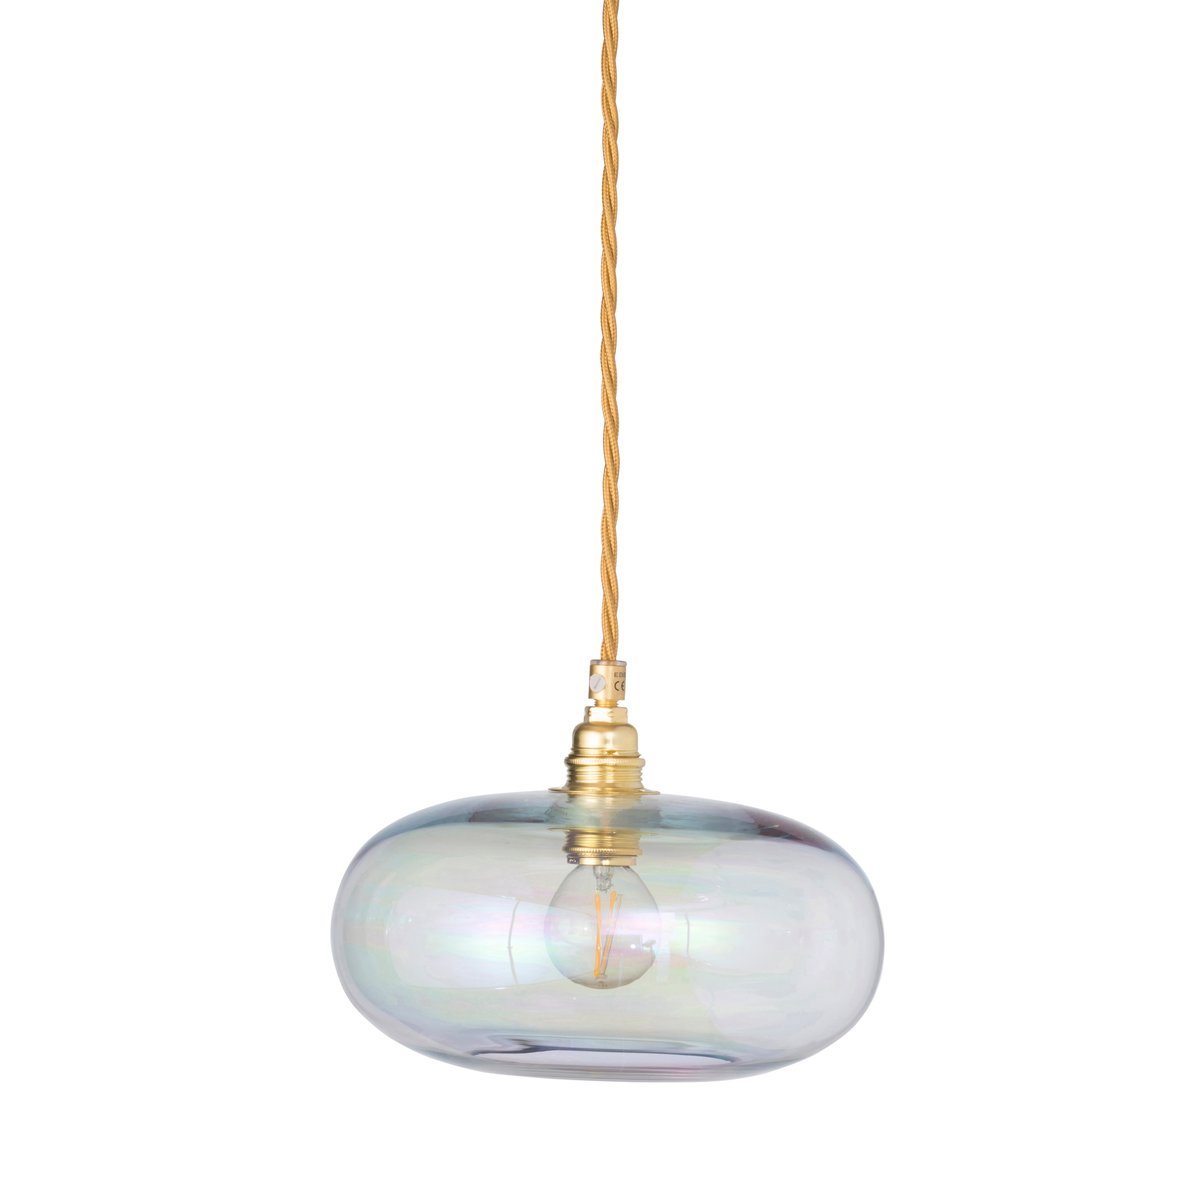 EBB & FLOW Horizon hanglamp Ø 21 cm. Chameleon-gold